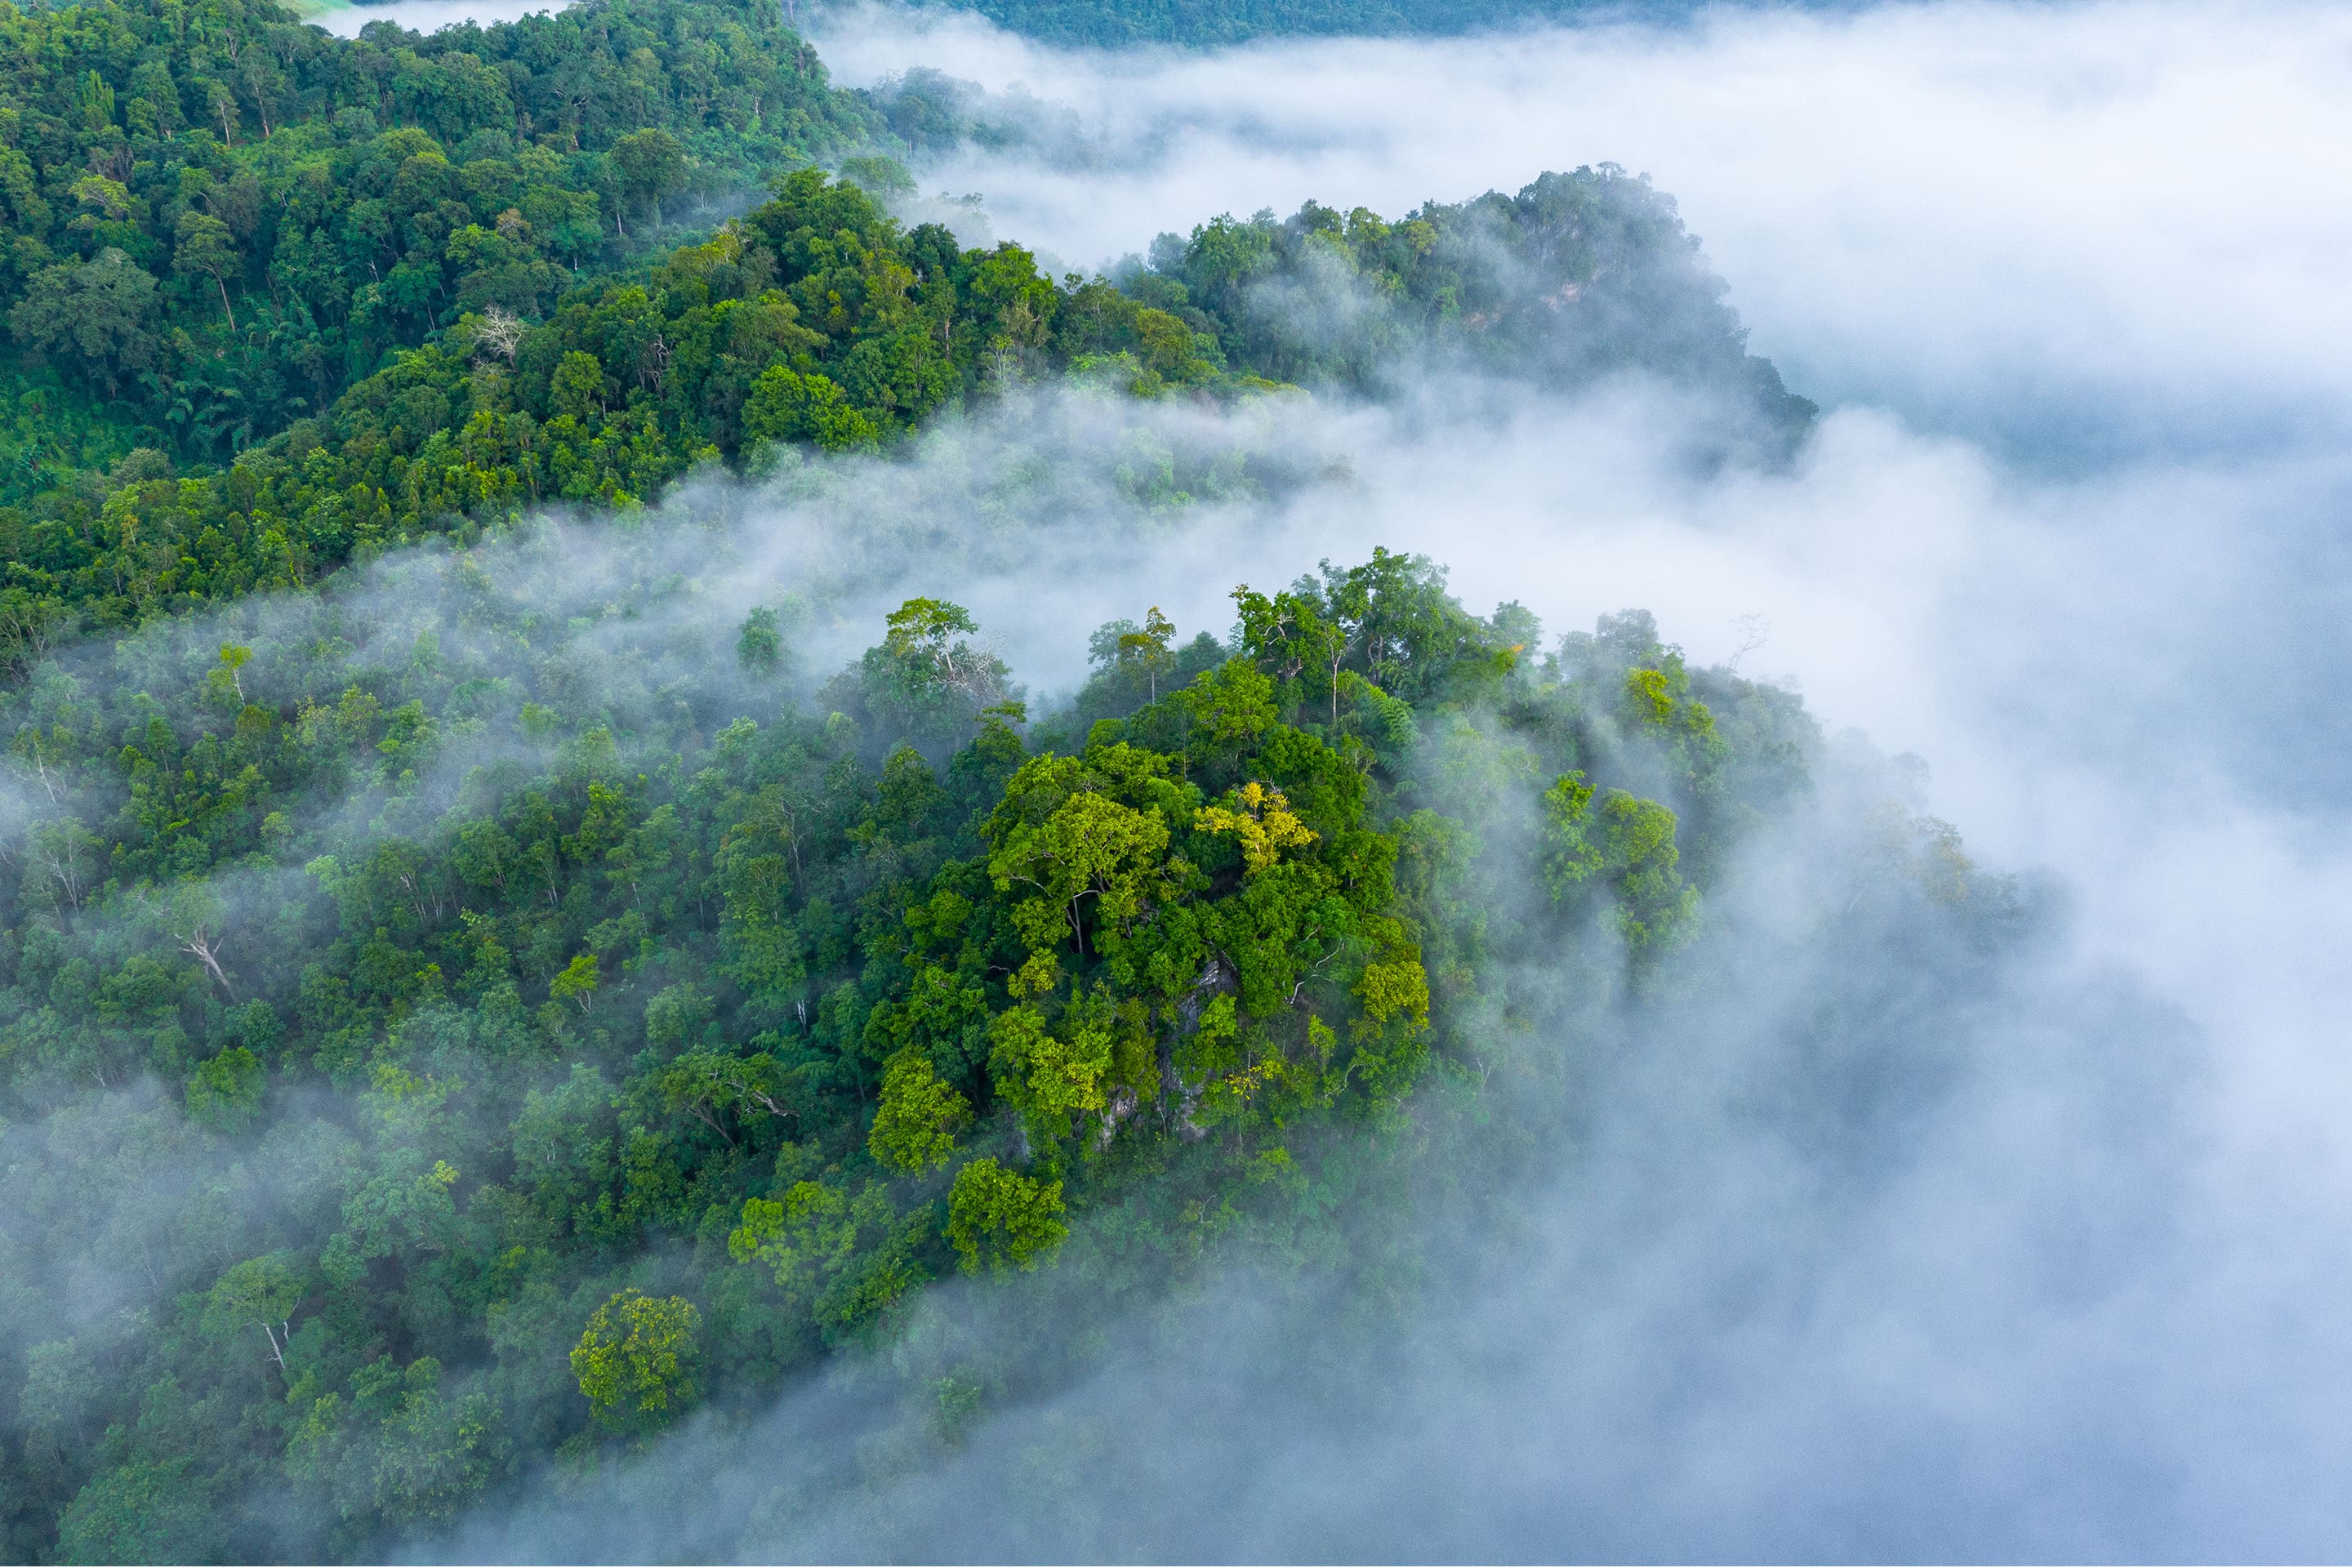 Vista aérea de un exuberante bosque verde envuelto en una blanca niebla.